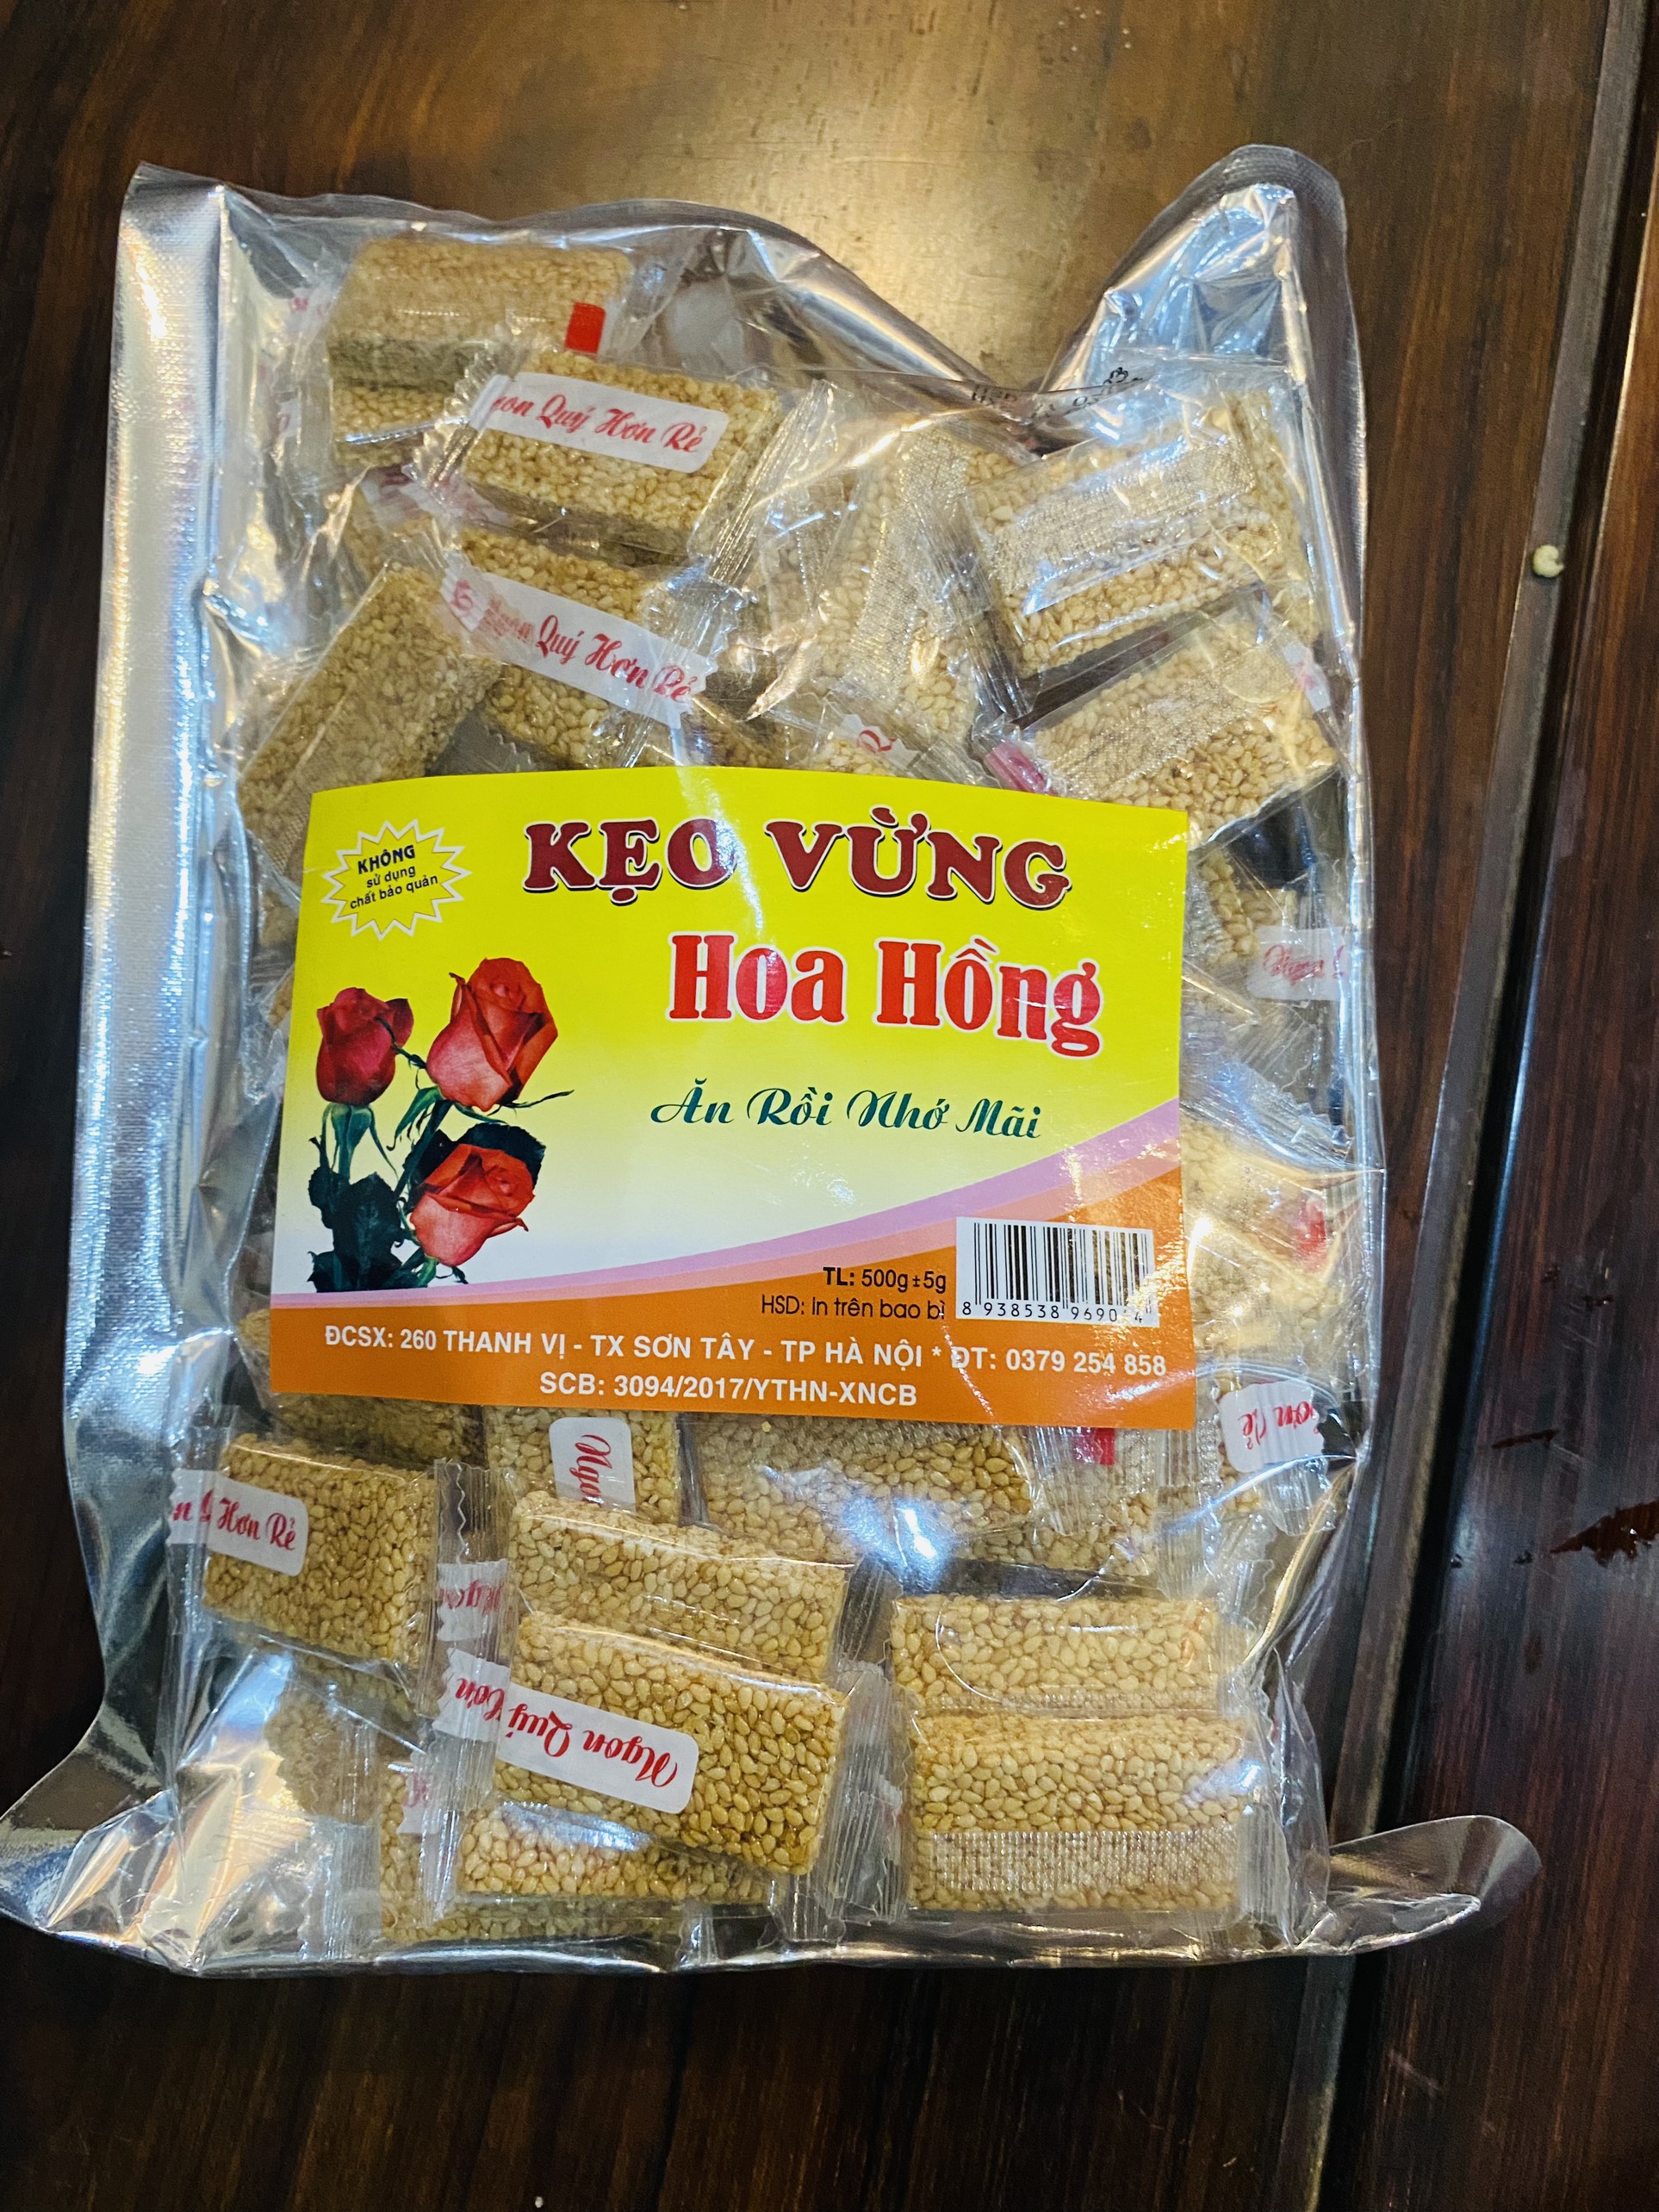 Kẹo Vừng Hoa Hồng đặc sản Đường Lâm Sơn Tây Gói 500g